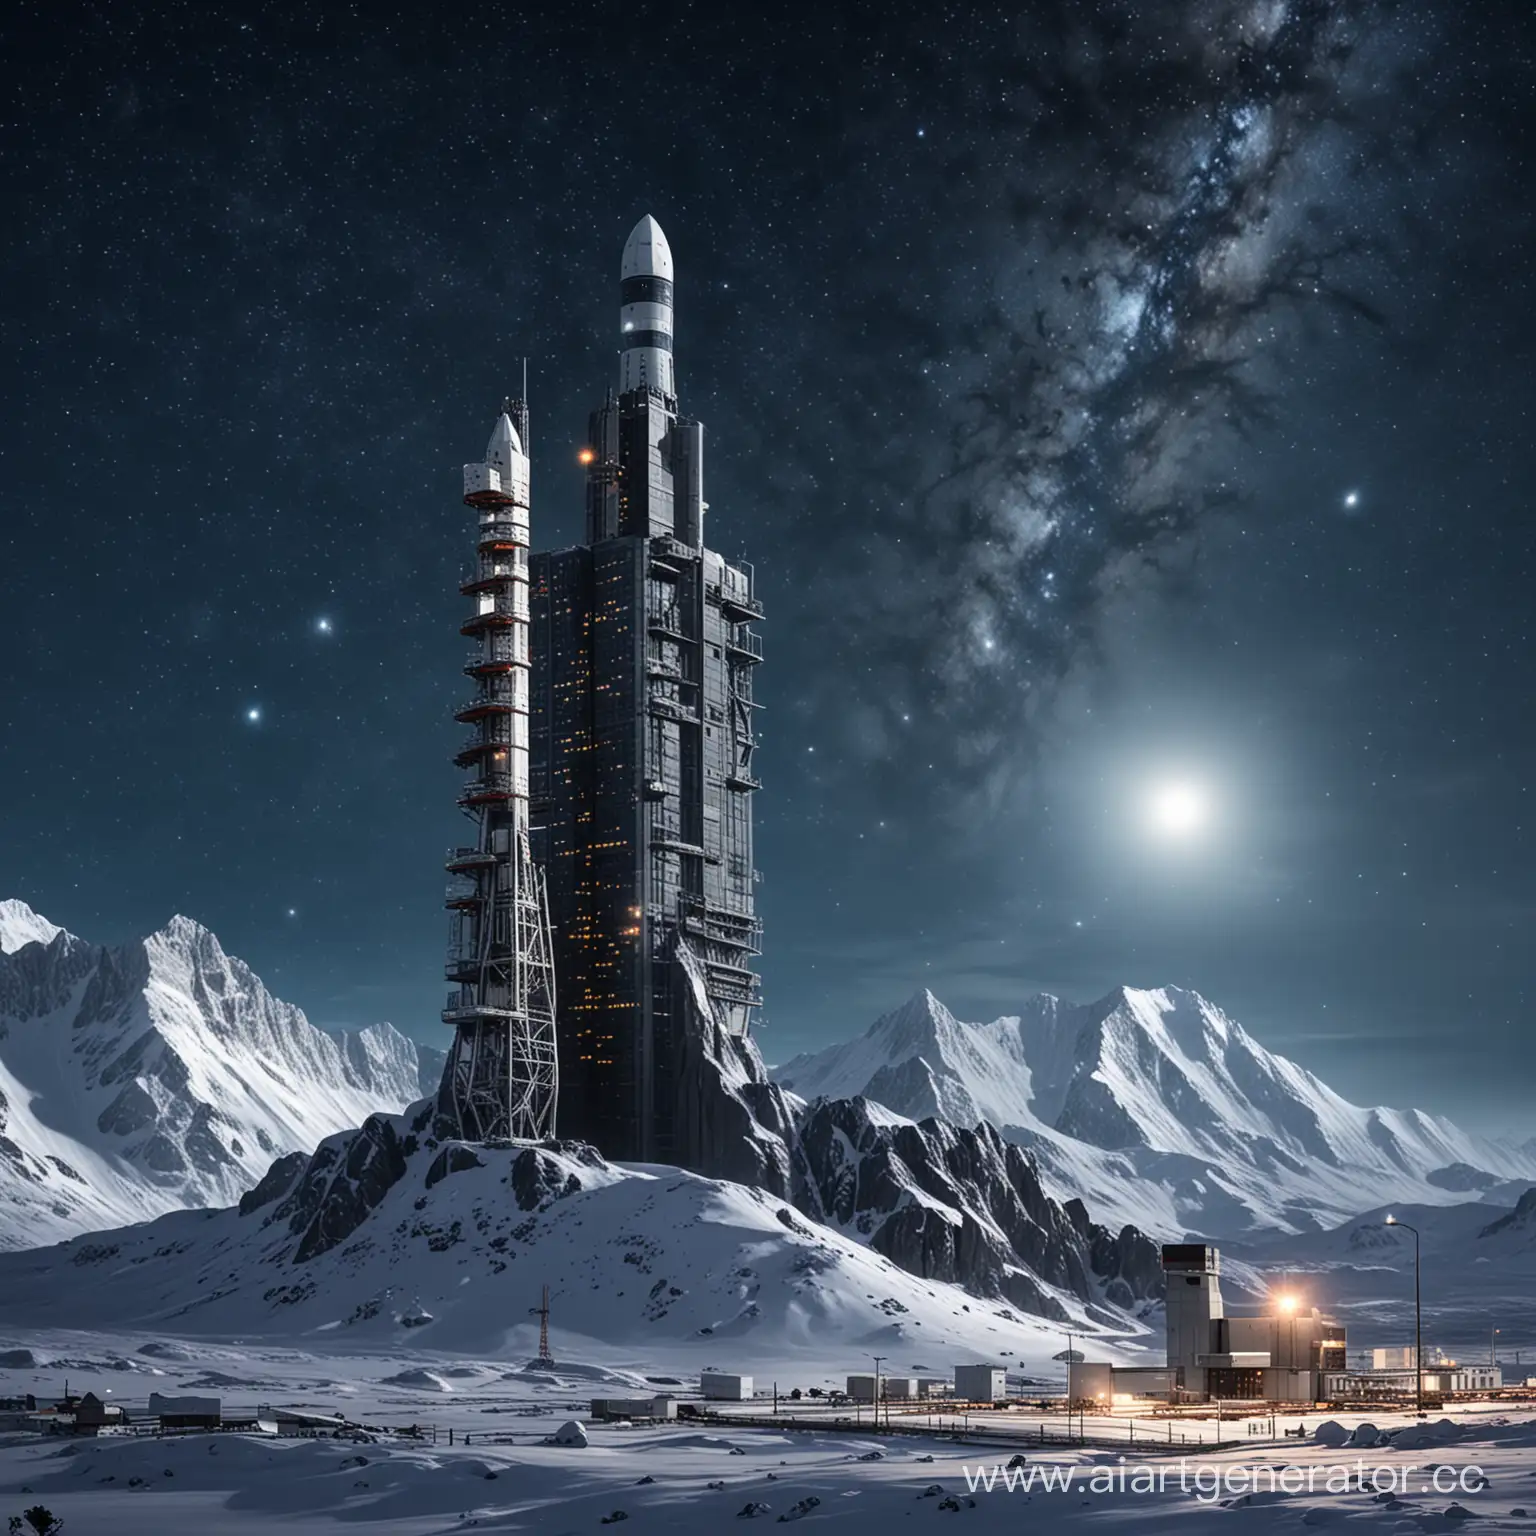 Военно-космическое и научно-исследовательское высокое здание с космодромом и аэродромом на вершине горы на фоне звездного неба и снега ночью